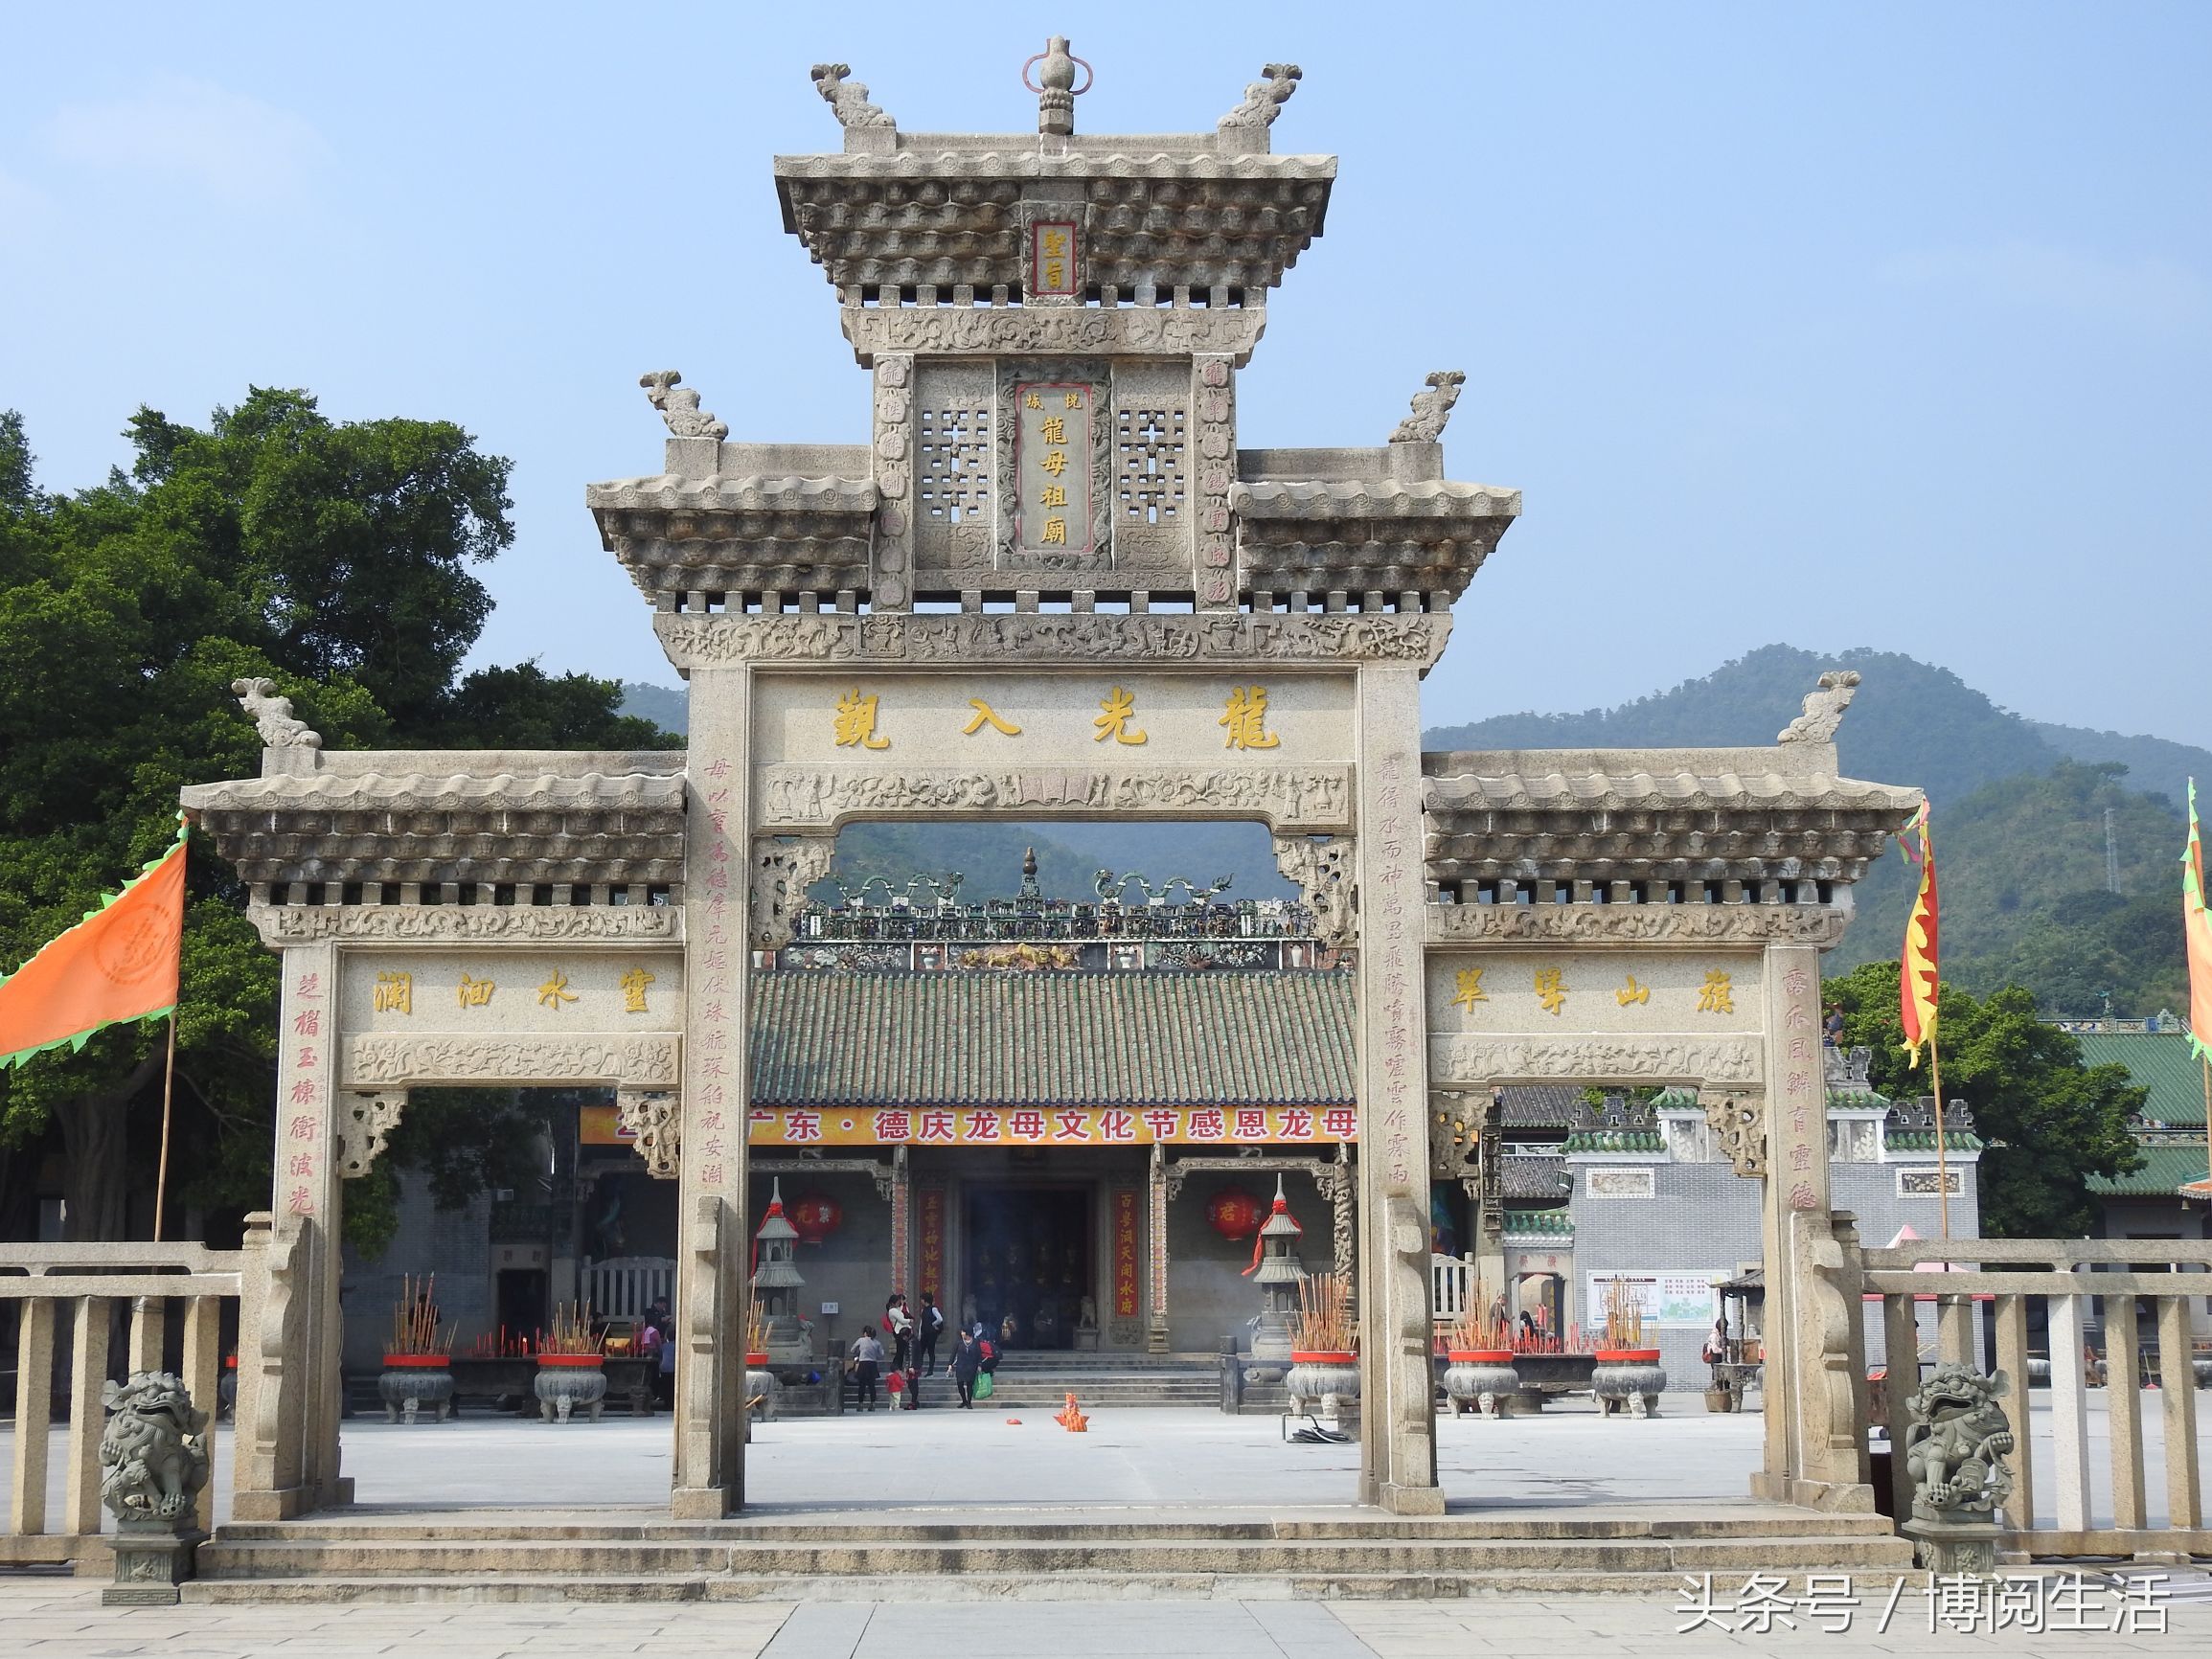 景点:德庆龙母祖庙,一座艺术天堂,被誉为"古坛仅存"的